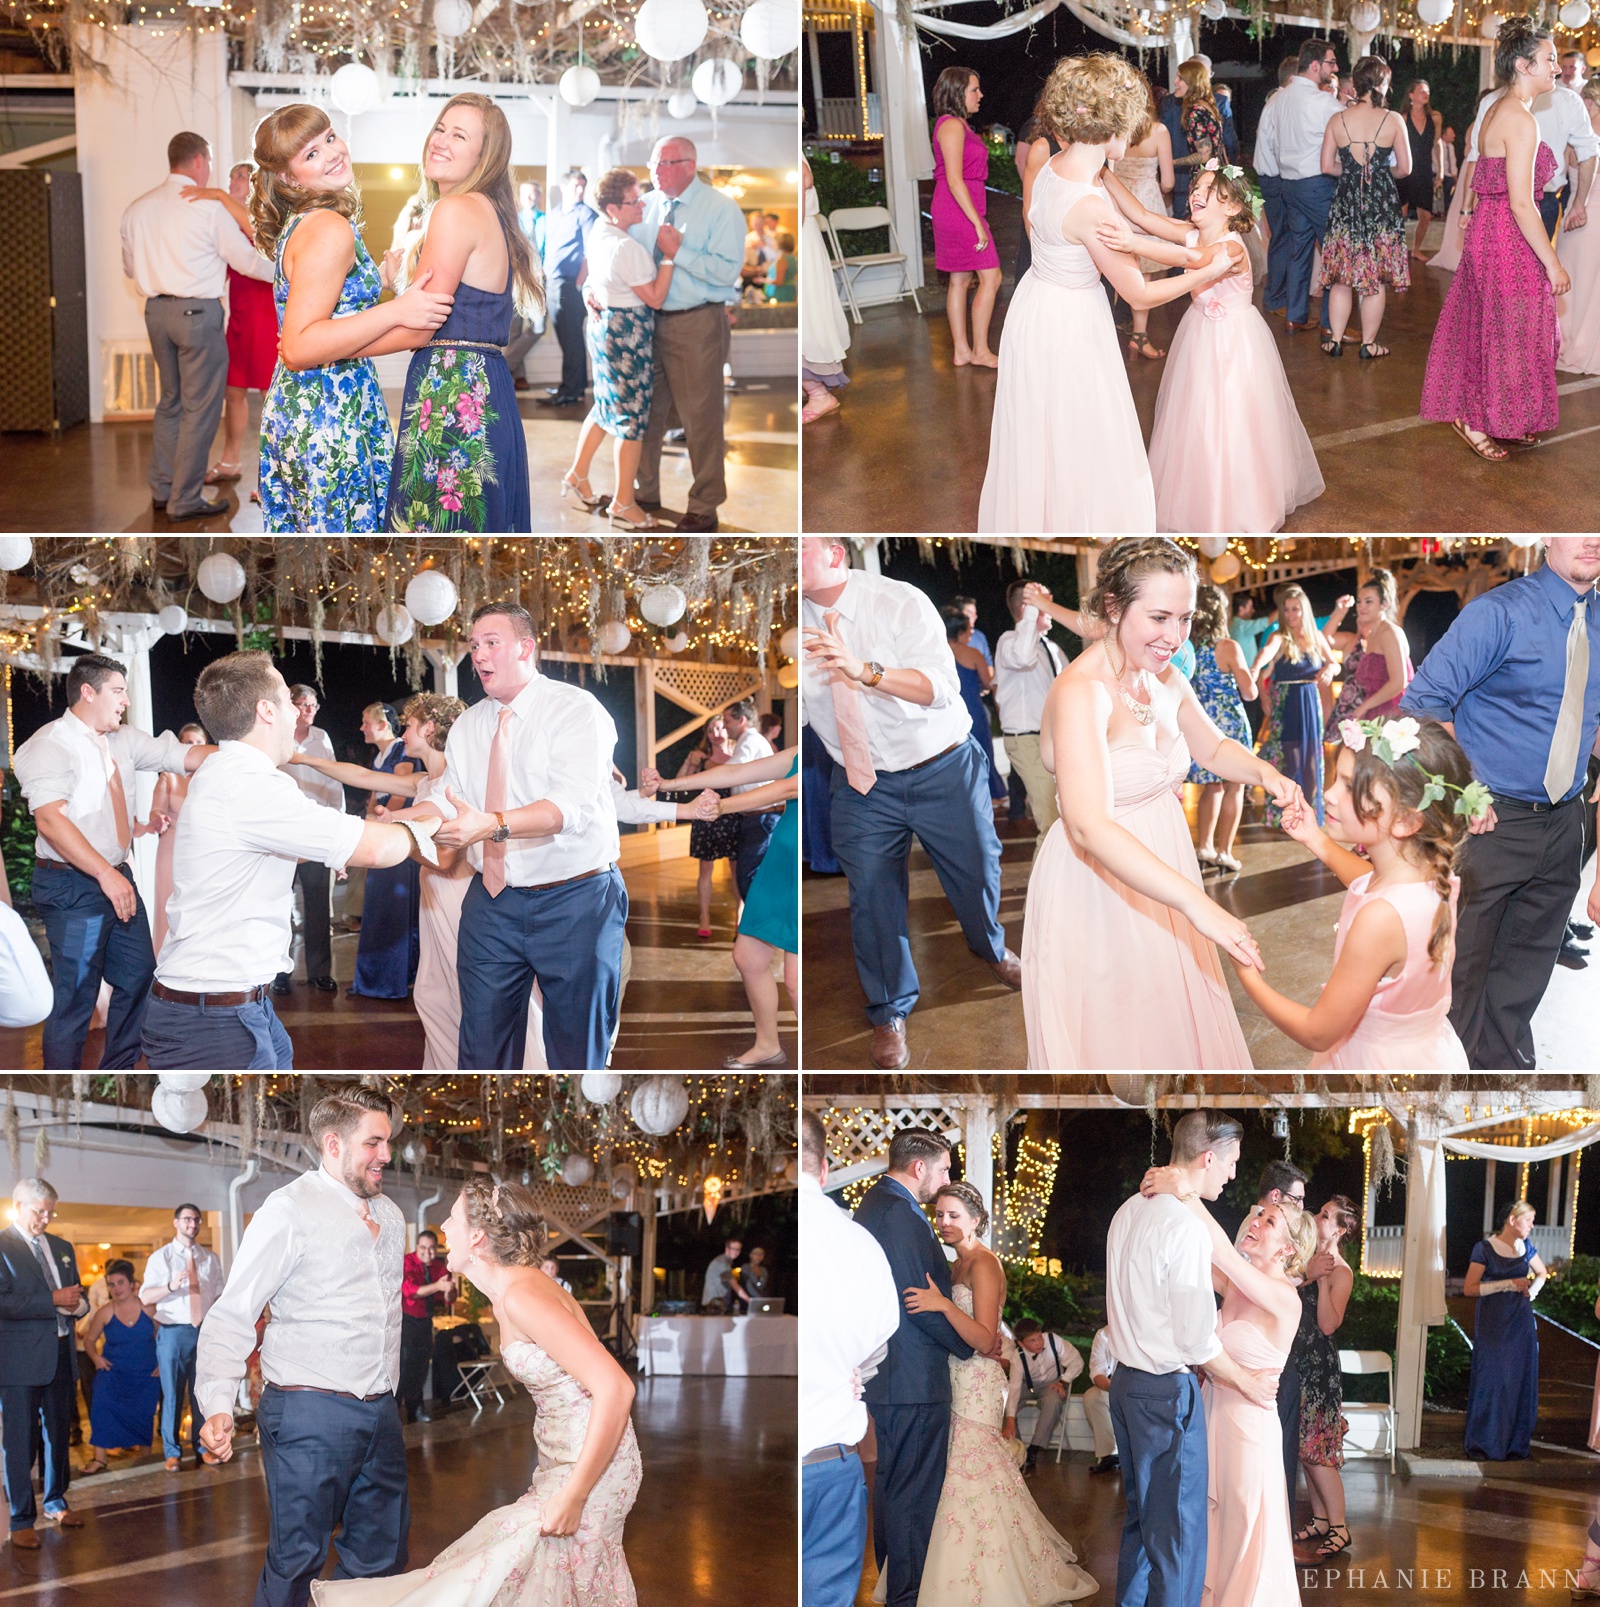 crazy-wedding-dancing-of-guests